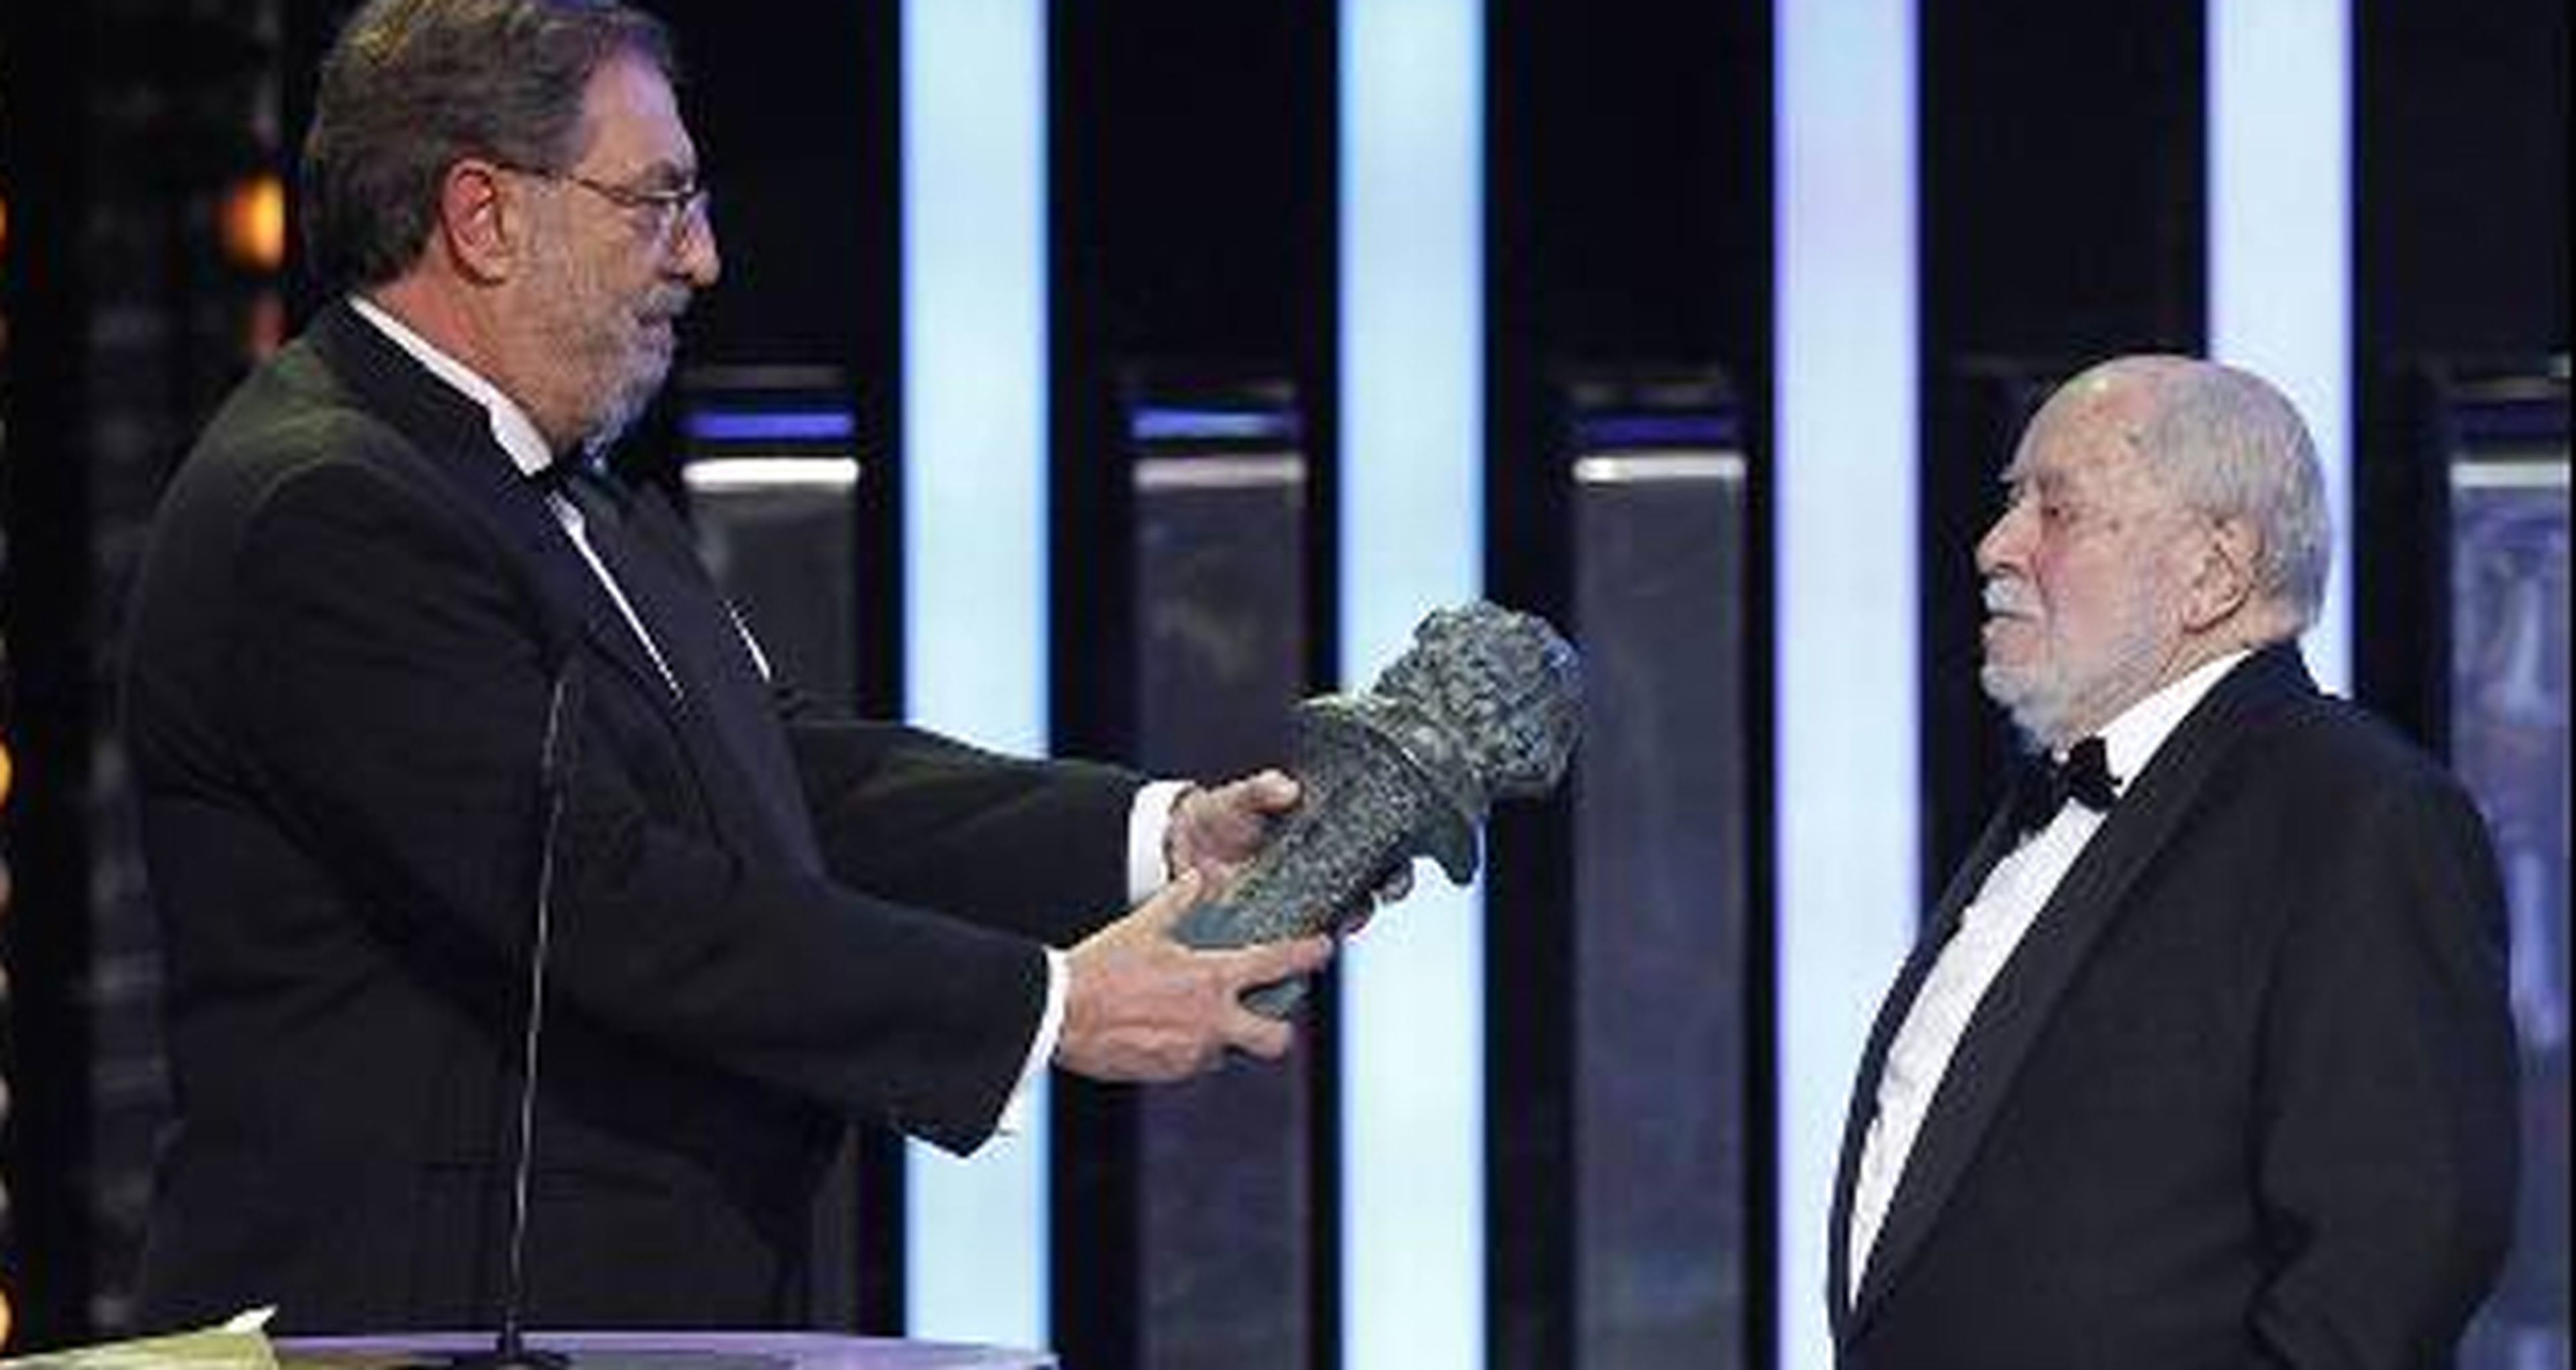 Premios Goya 2014: brujas y Beatles se llevan los premios